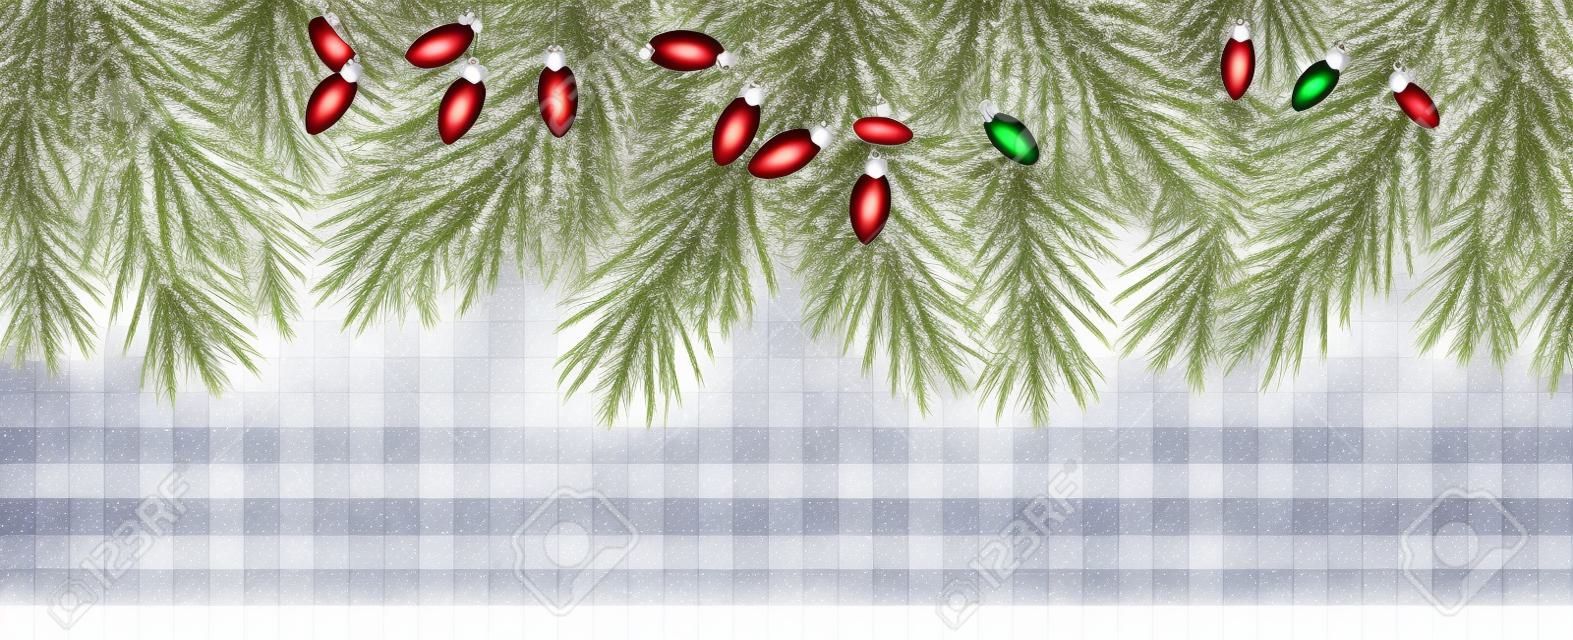 Frontière de Noël avec des branches de sapin et des pommes de pin sur fond transparent